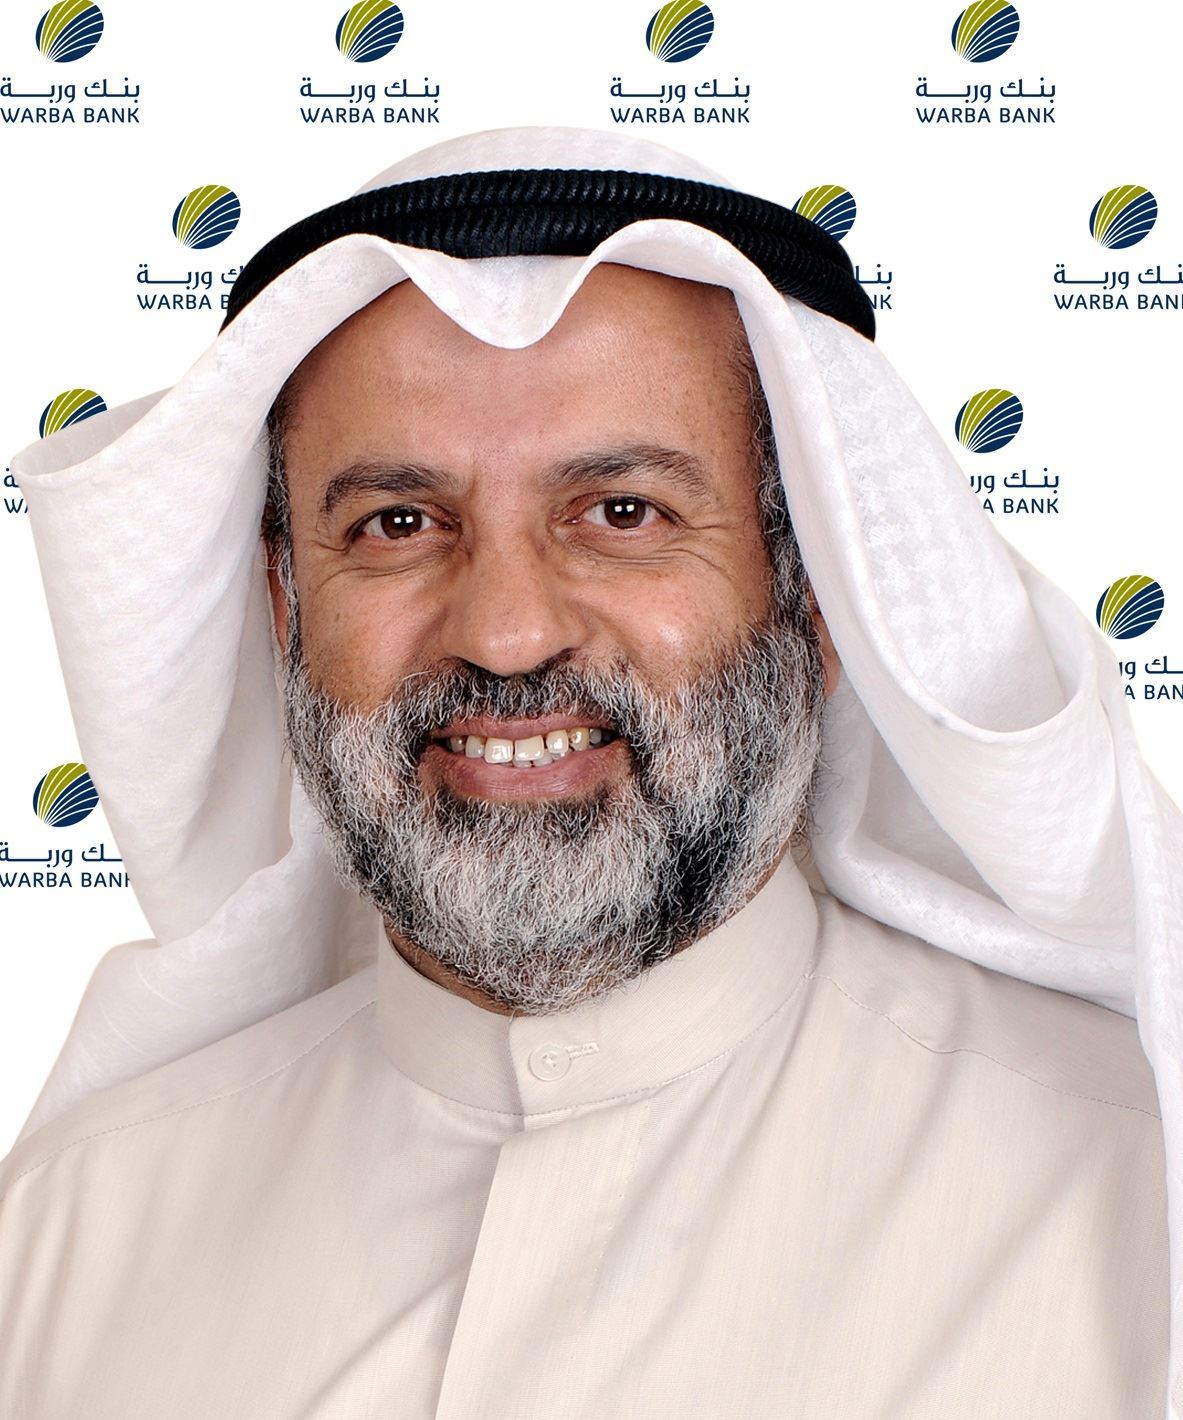 عبد الوهاب عبد الله الحوطي، رئيس مجلس إدارة بنك وربة